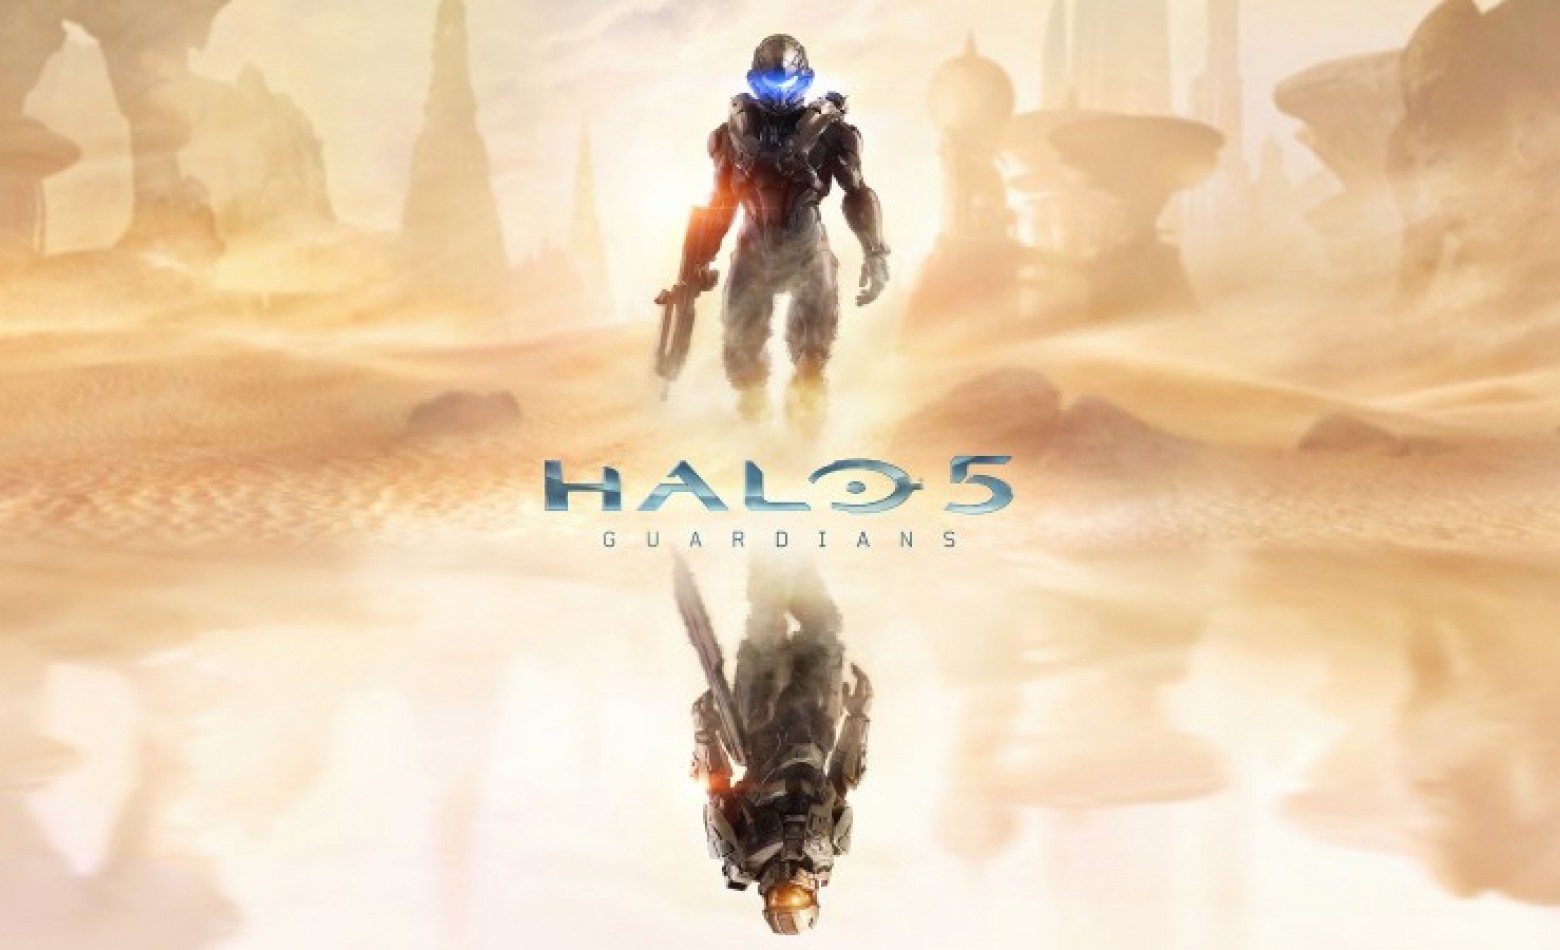 Protagonista de Halo 5 será completamente novo